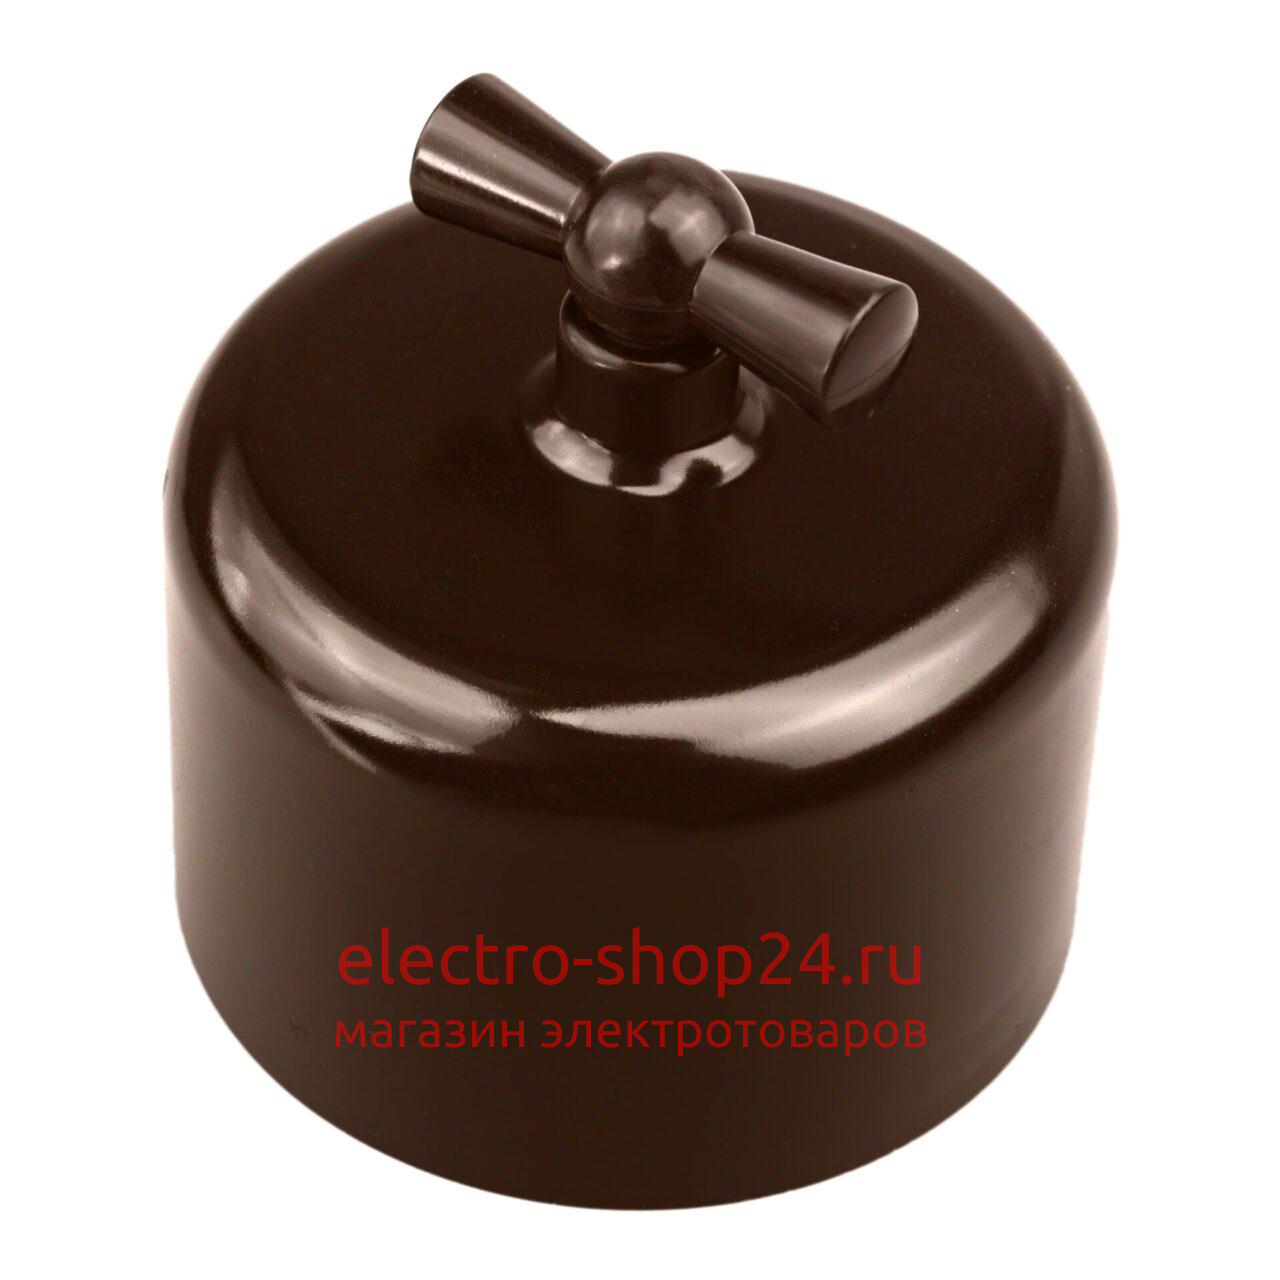 Выключатель 1-клавишный Bironi Ришелье пластик коричневый R1-210-22 R1-210-22 - магазин электротехники Electroshop